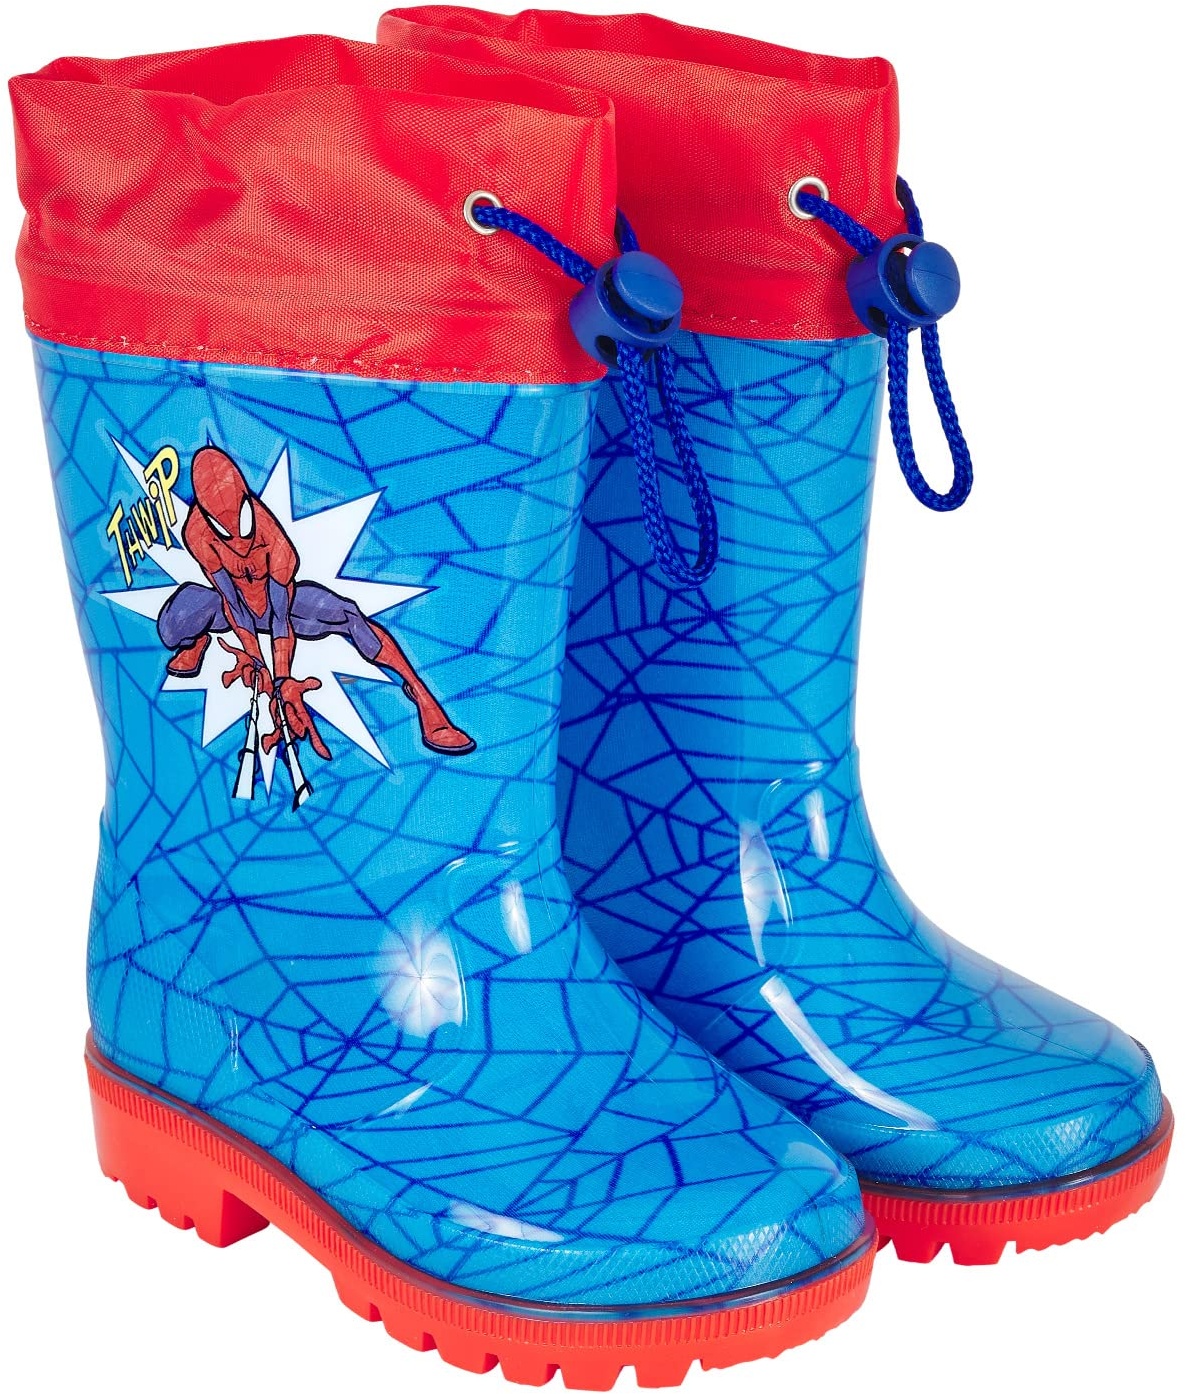 PERLETTI Marvel Spider Man Regenstiefel für Kinder - Spiderman Wasserdichte Stiefel Rot Blau mit Rutschfeste Sohle und Kordelzug - Regen Stiefeletten für Jungen mit Spinnennetze (30/31 EU, Türkis) - 30/31 EU